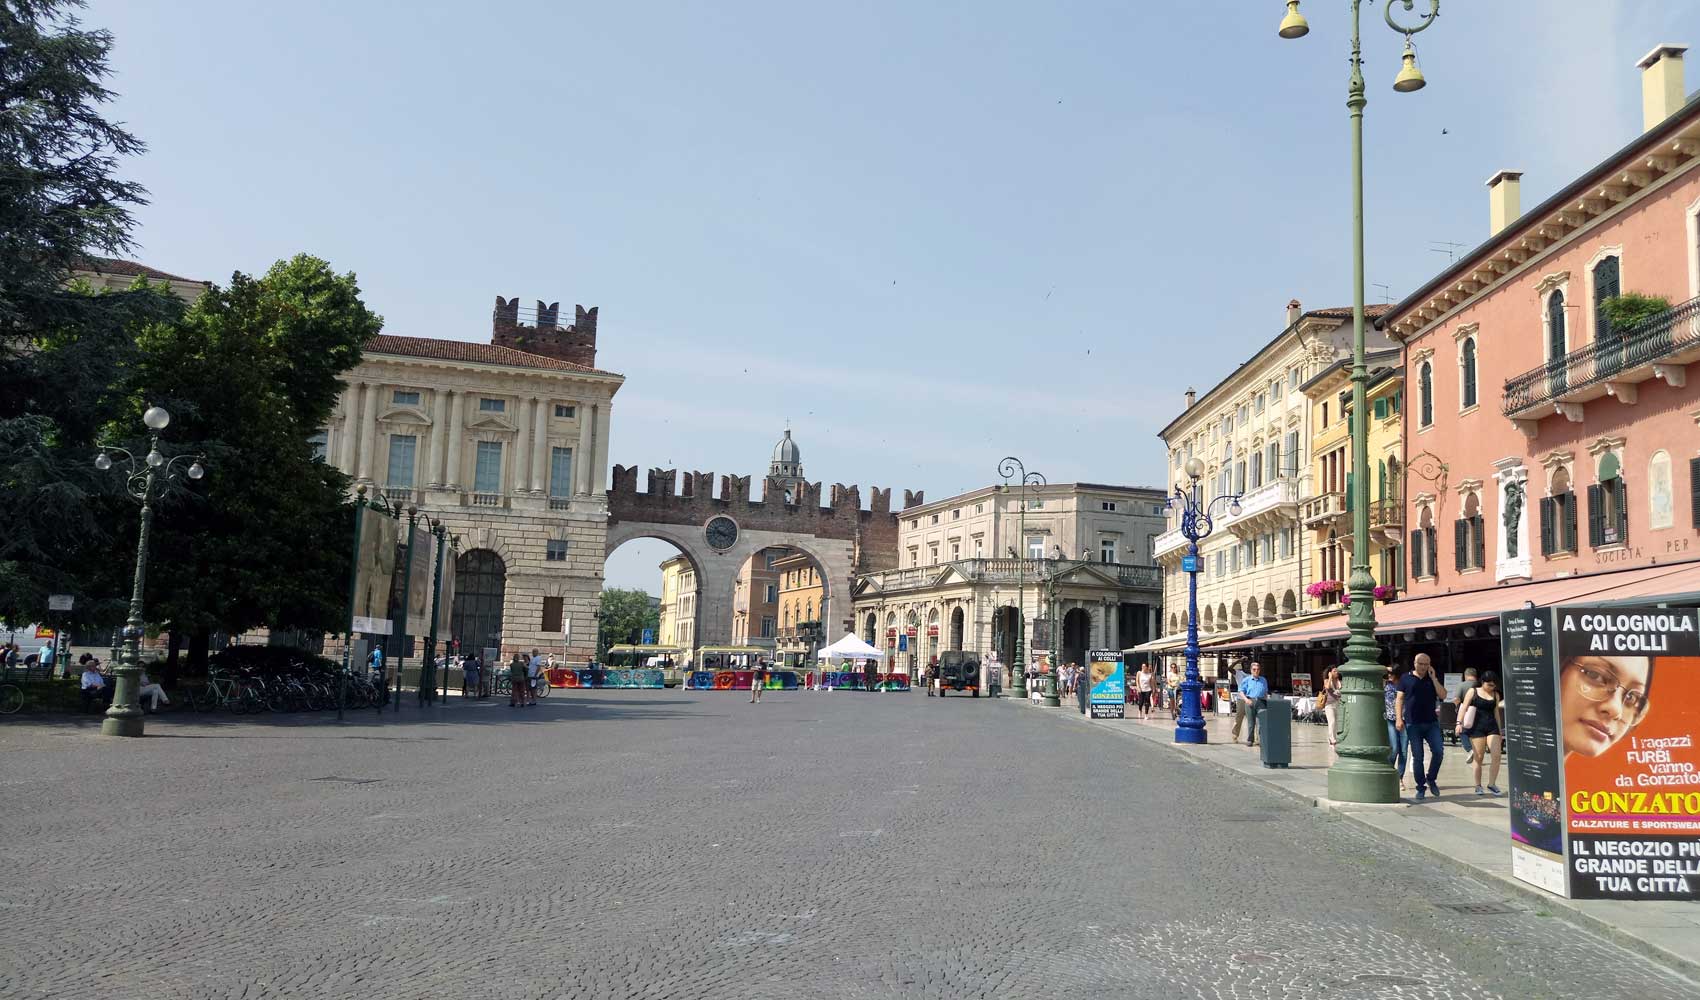 Die Piazza Bra von Verona